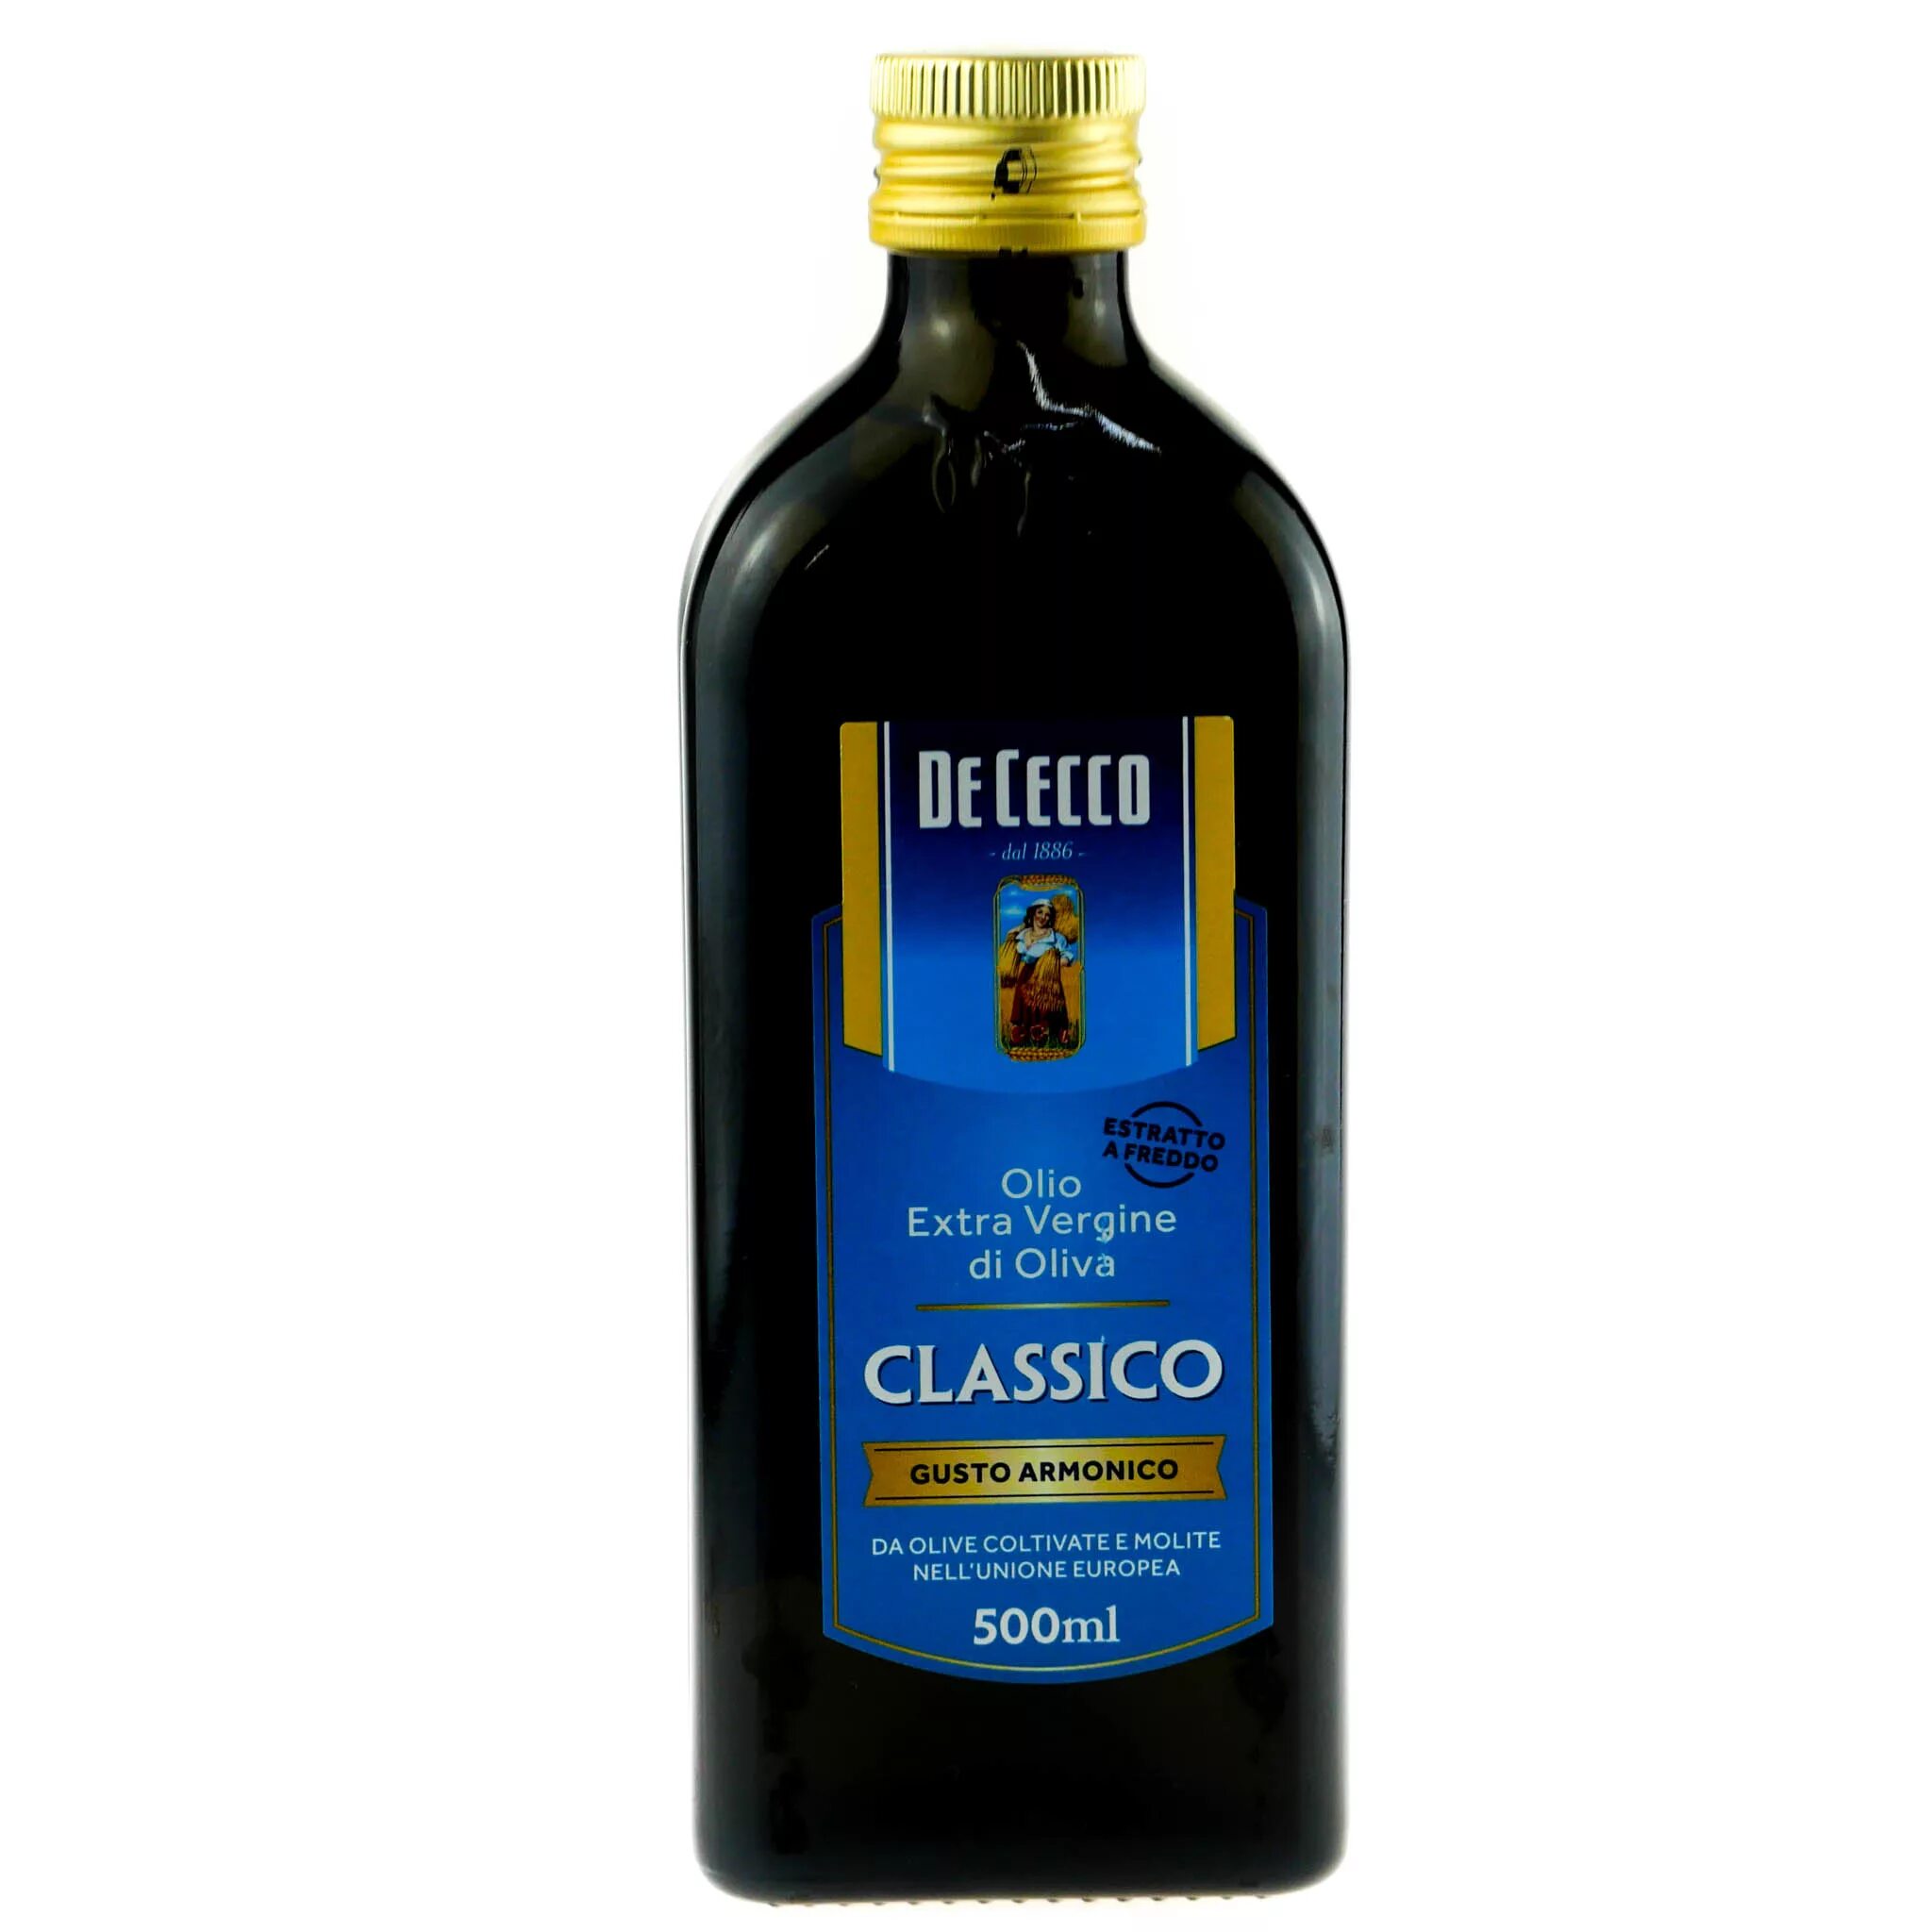 Купить нерафинированное оливковое масло холодного отжима. Масло оливковое de Cecco, 500 мл.. De Cecco оливковое нерафинированное 500мл. Масло оливковое de Cecco Extra vergine, 0,5л. Оливковое масло de Cecco Classico 500мл маркировка.